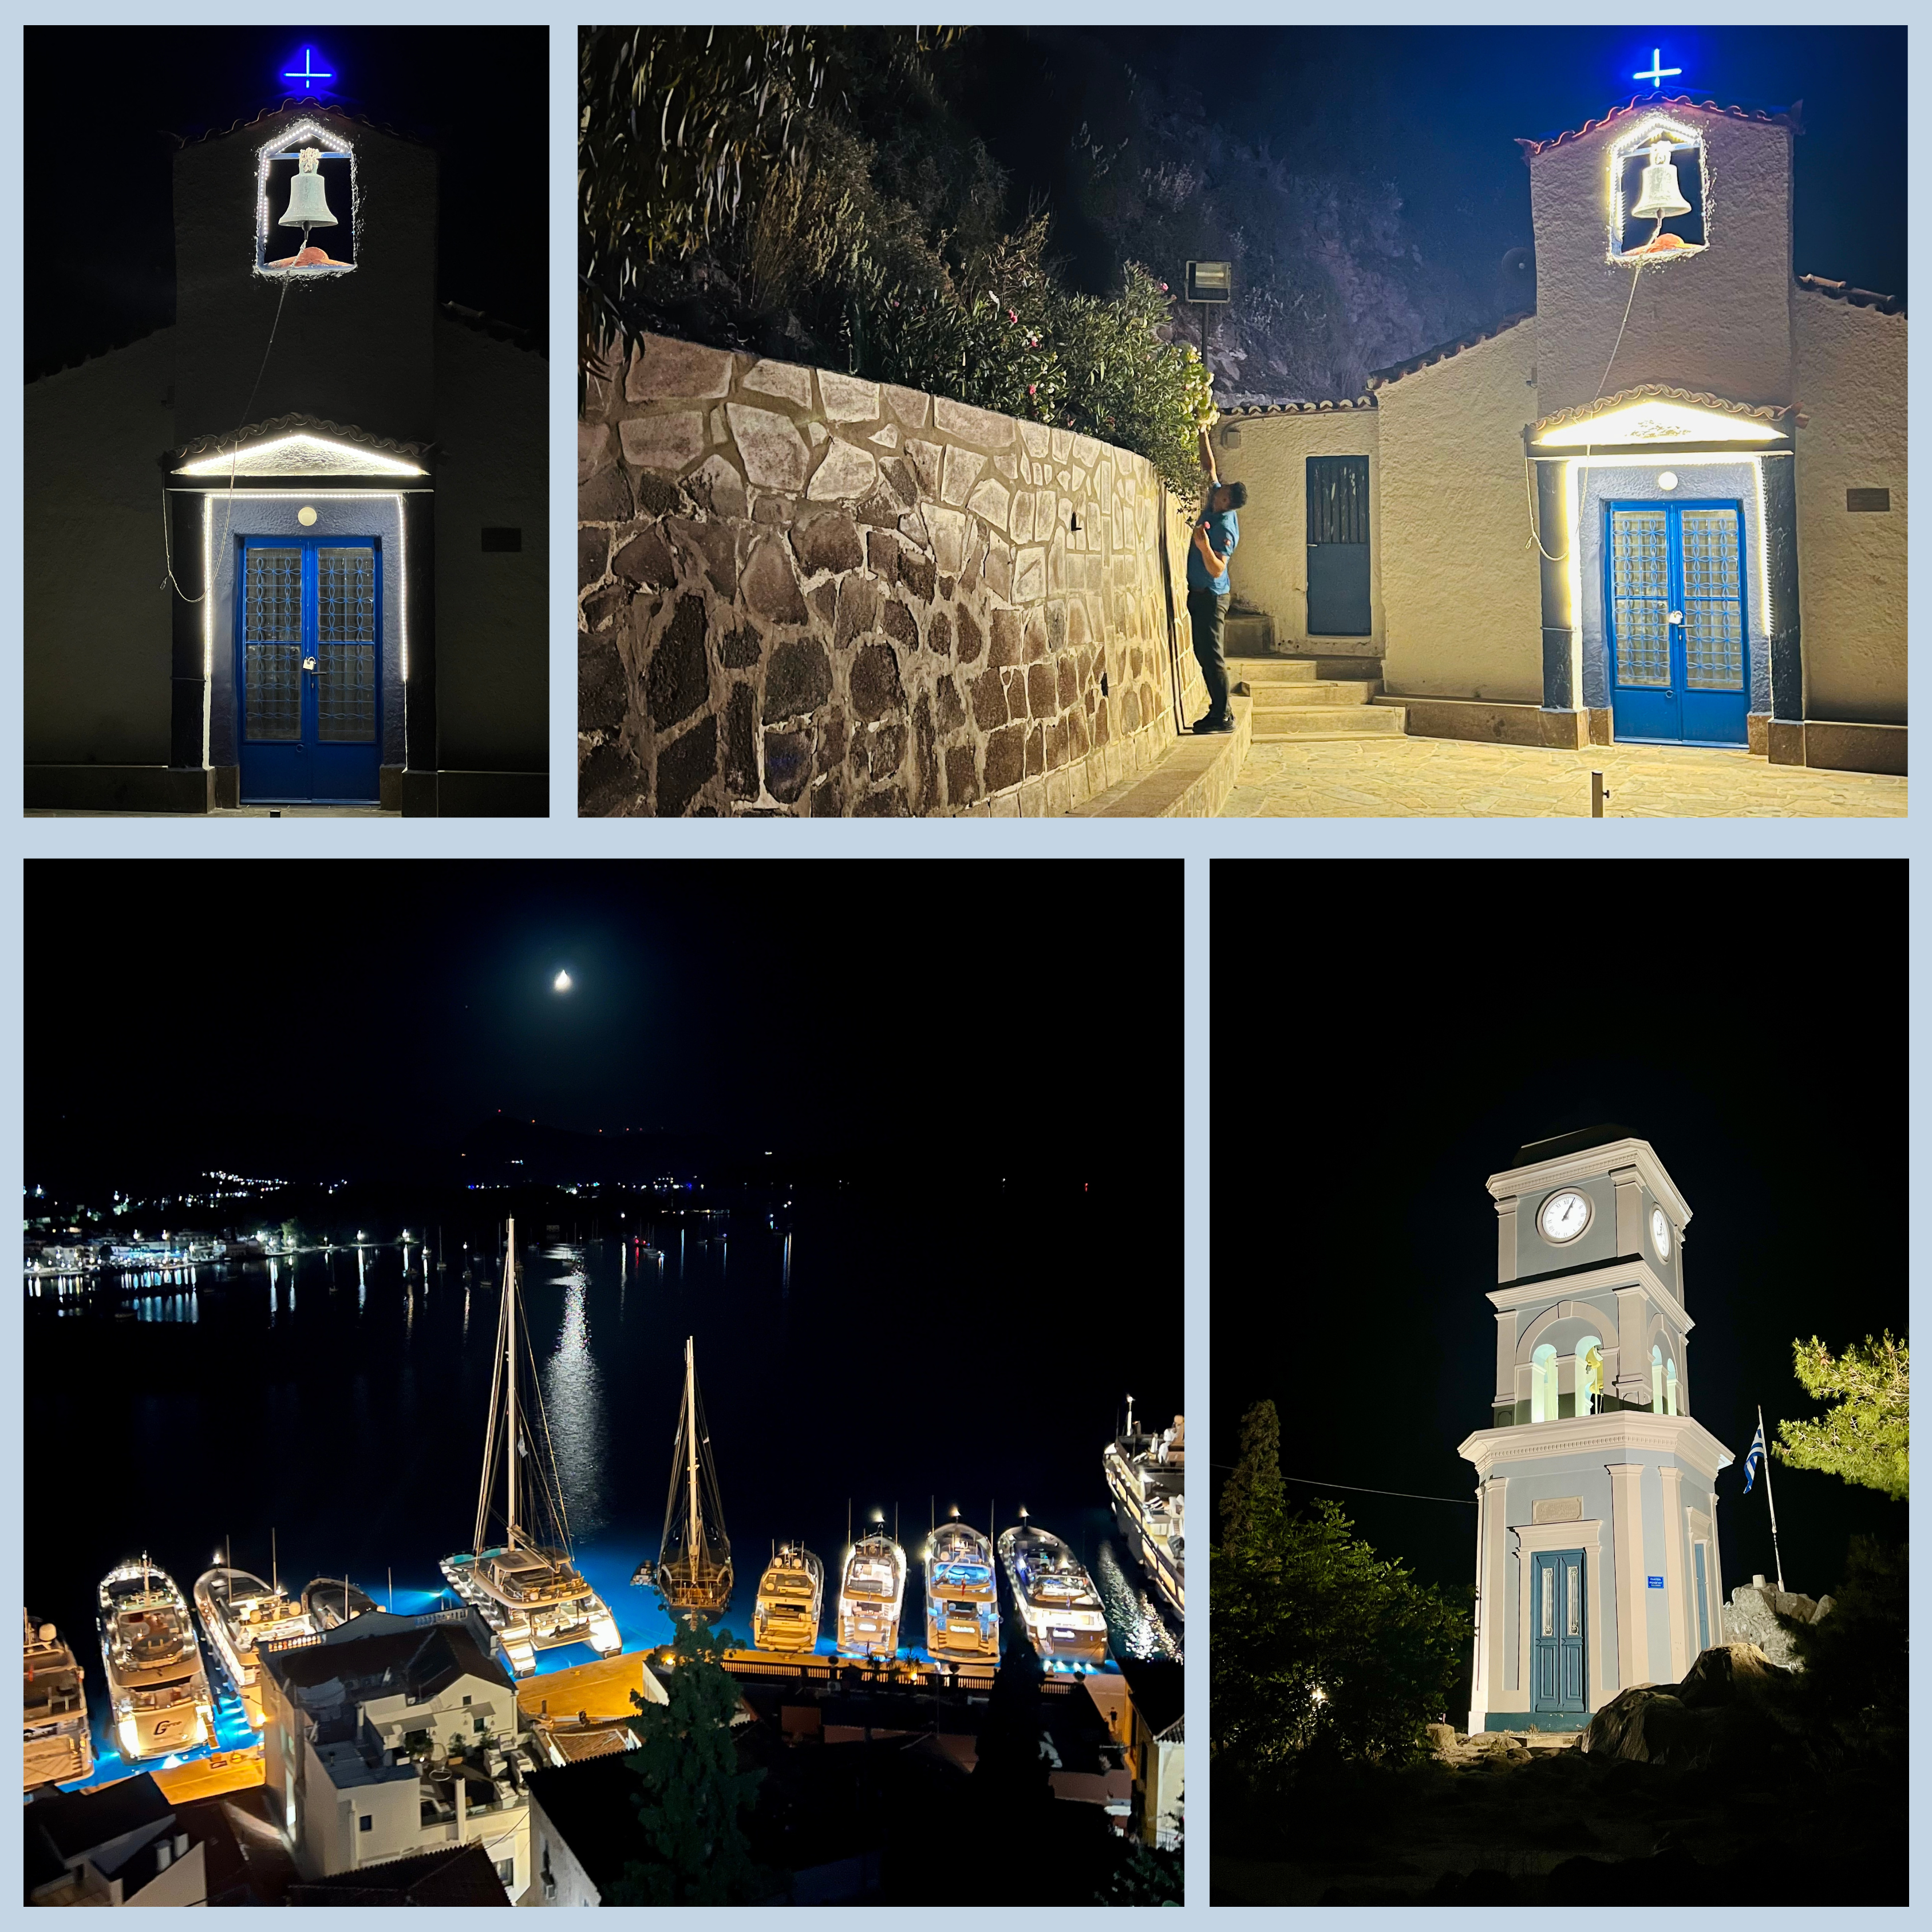 Photoshoot in Greece, Poros island by Nele Tasane